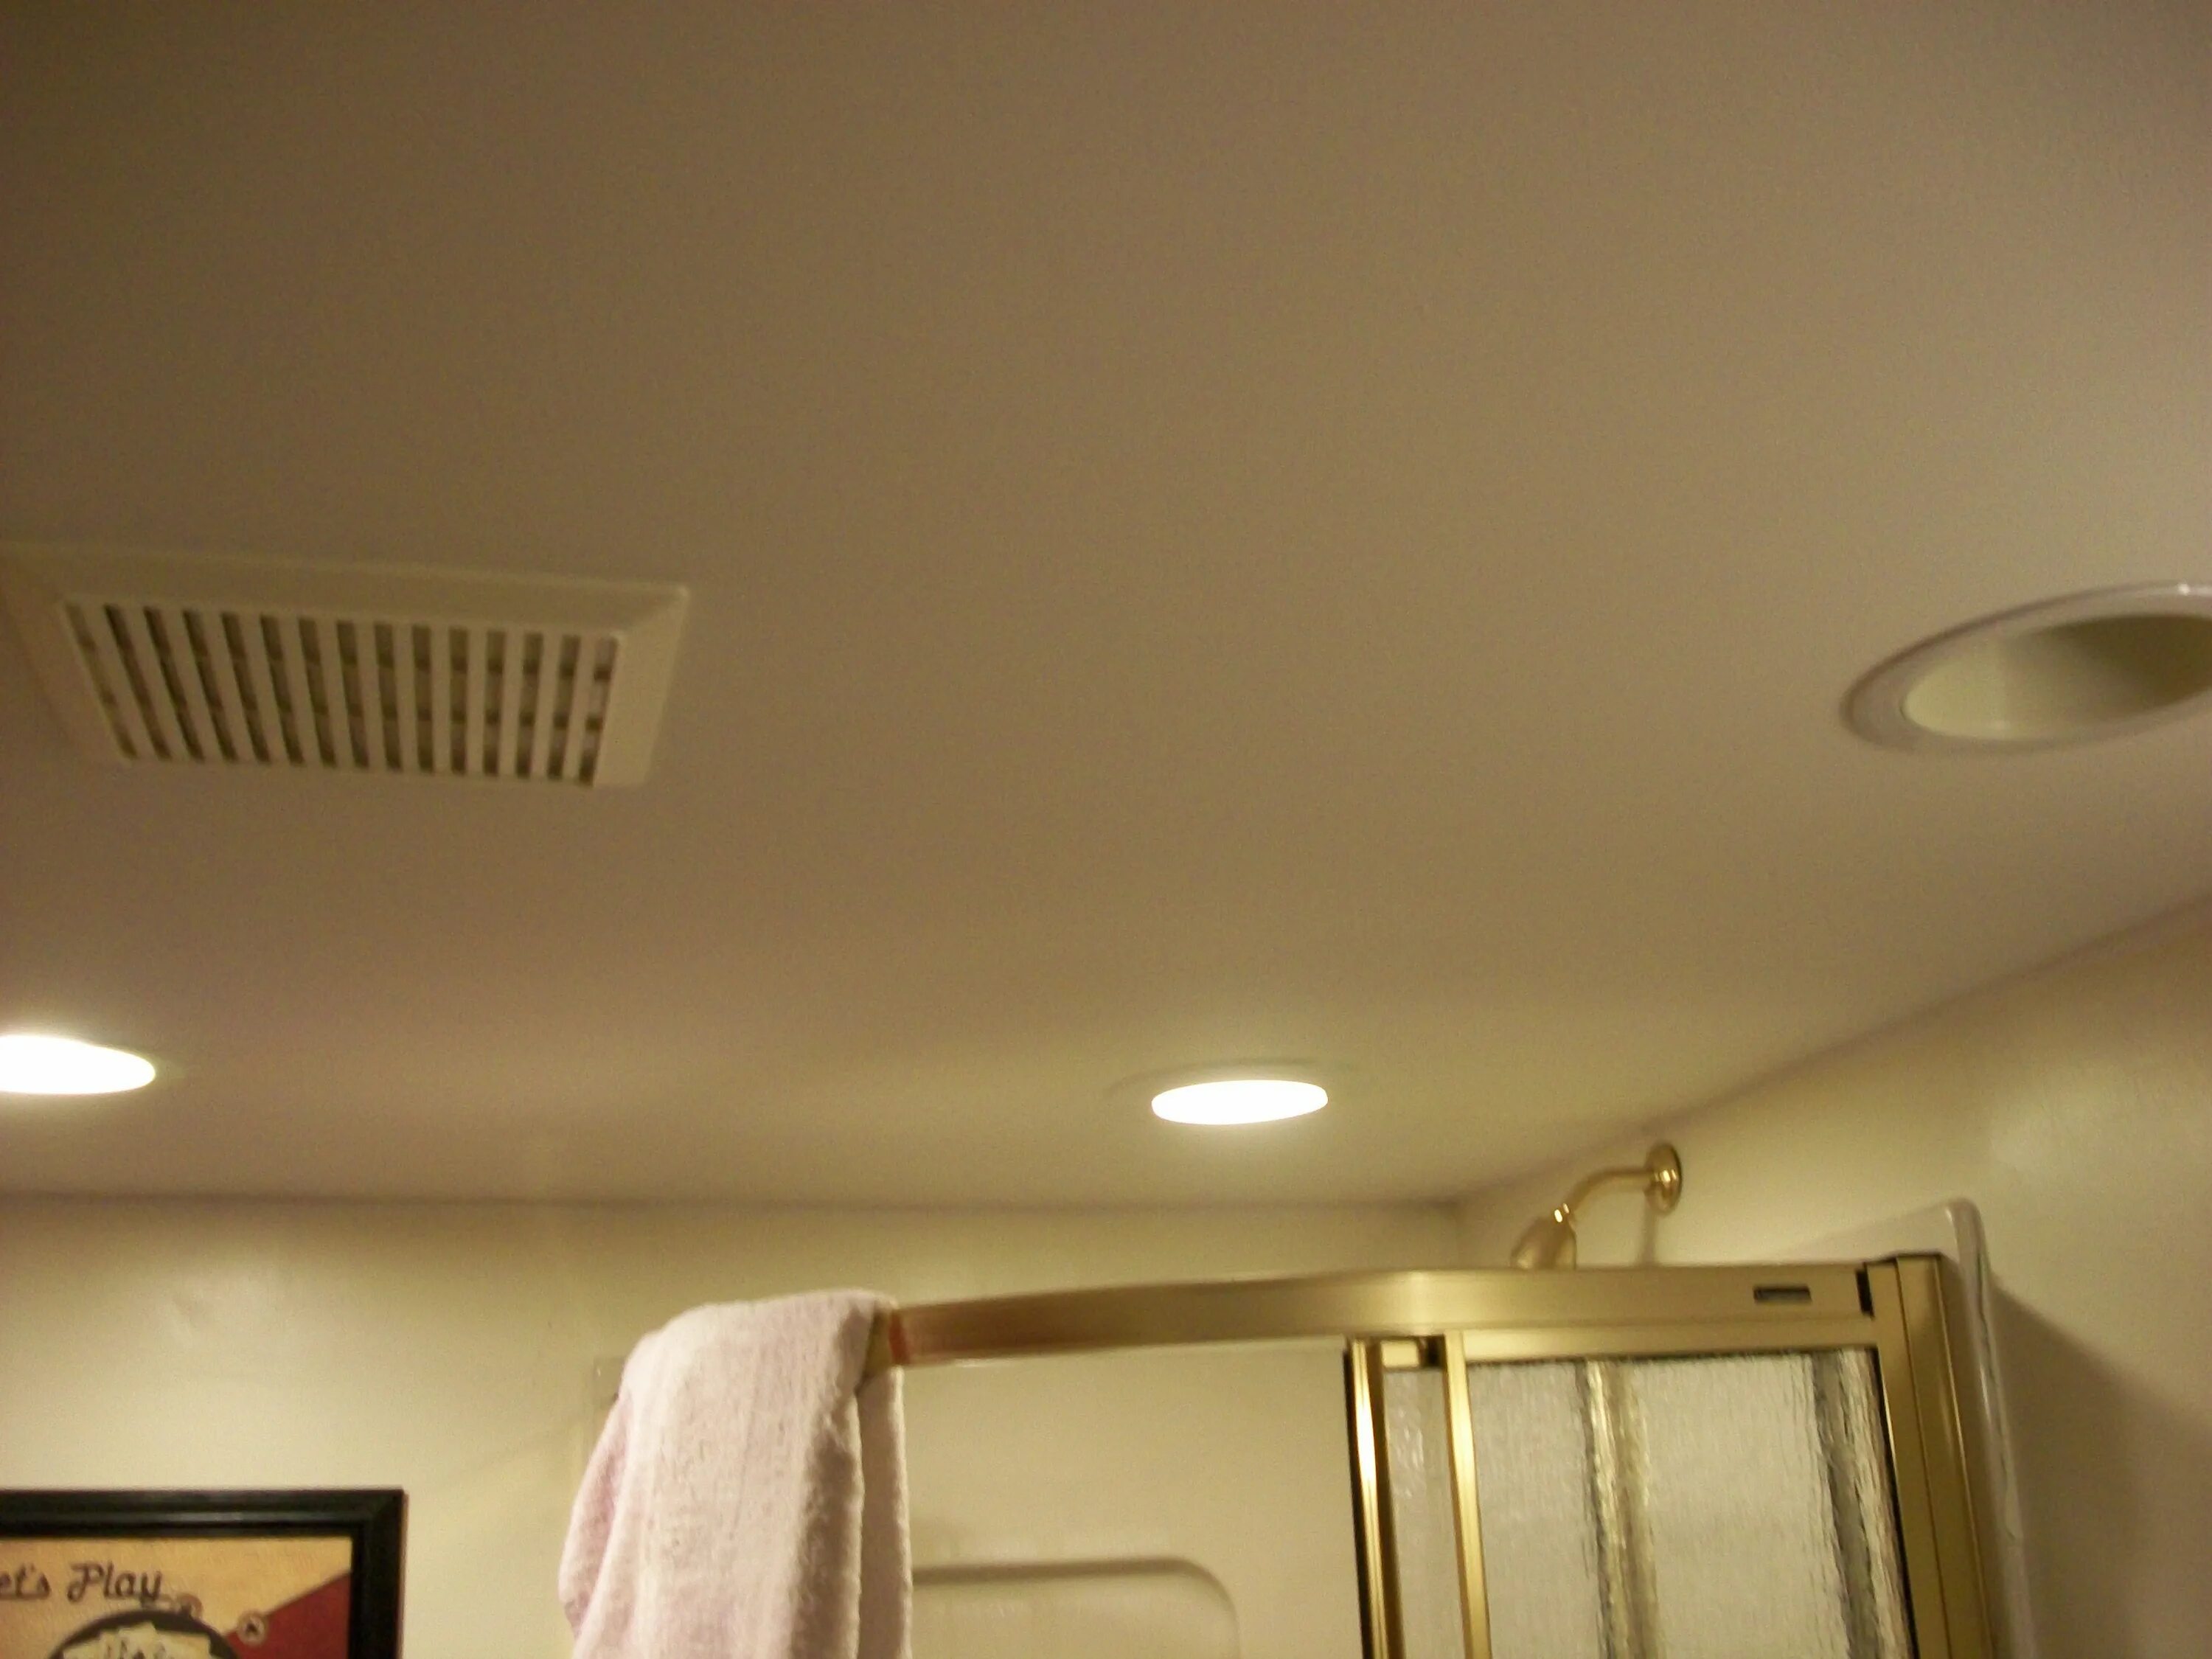 Вентиляция натяжной в ванне. Вытяжной вентилятор в натяжной потолок. Вытяжка в потолке в ванной. Вентиляция в потолке. Потолочный вытяжной вентилятор в ванную в натяжной потолок.